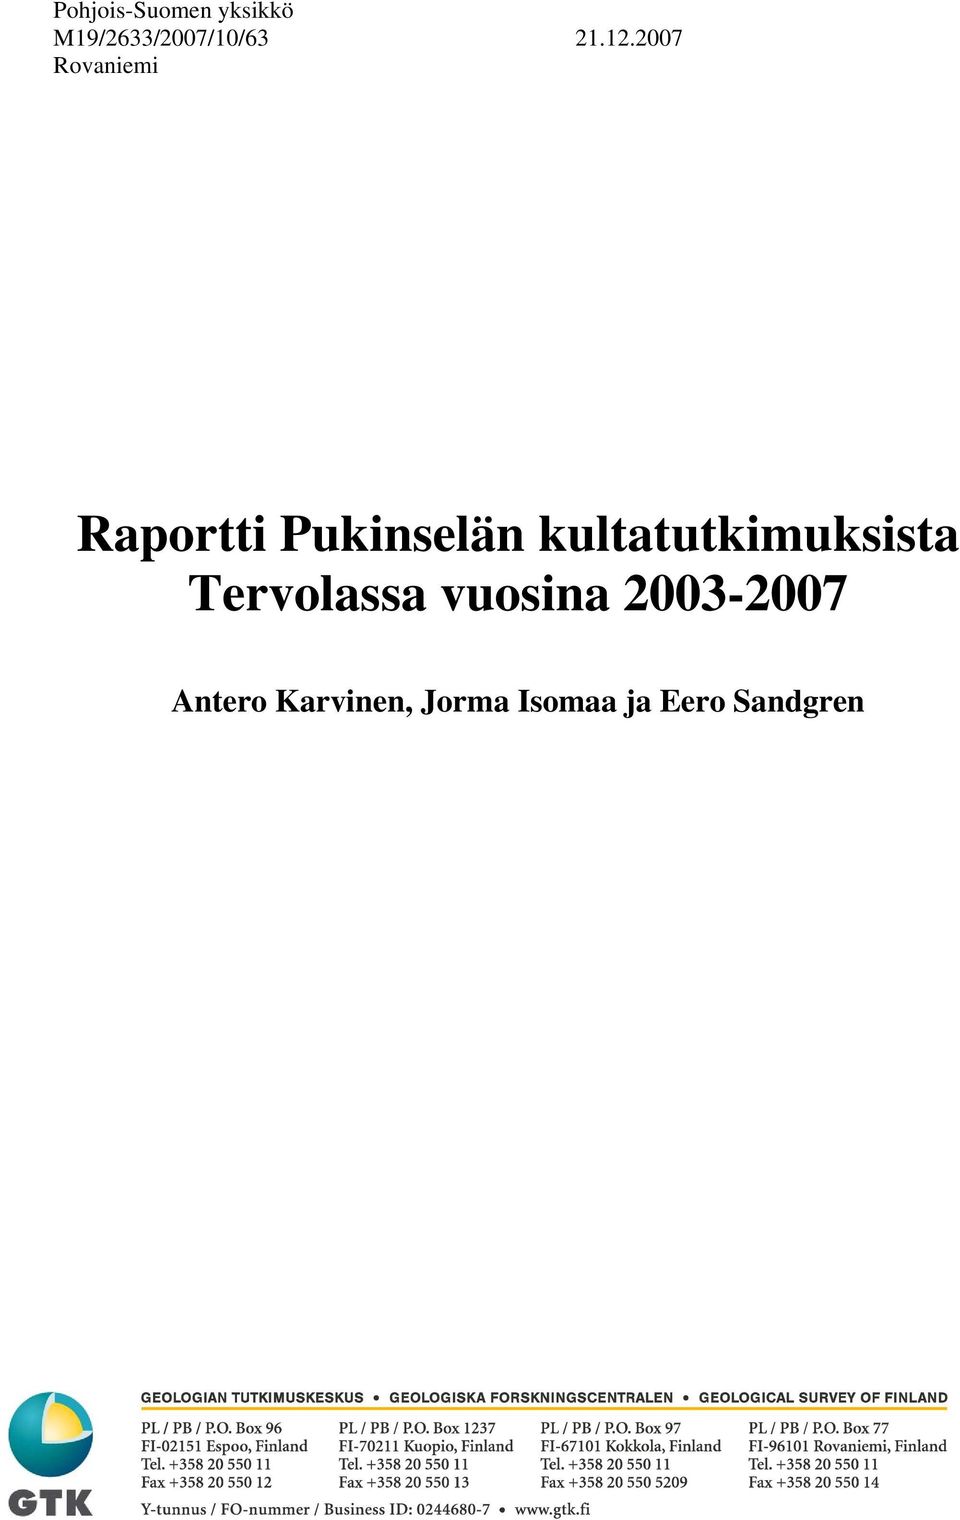 2007 Rovaniemi Raportti Pukinselän